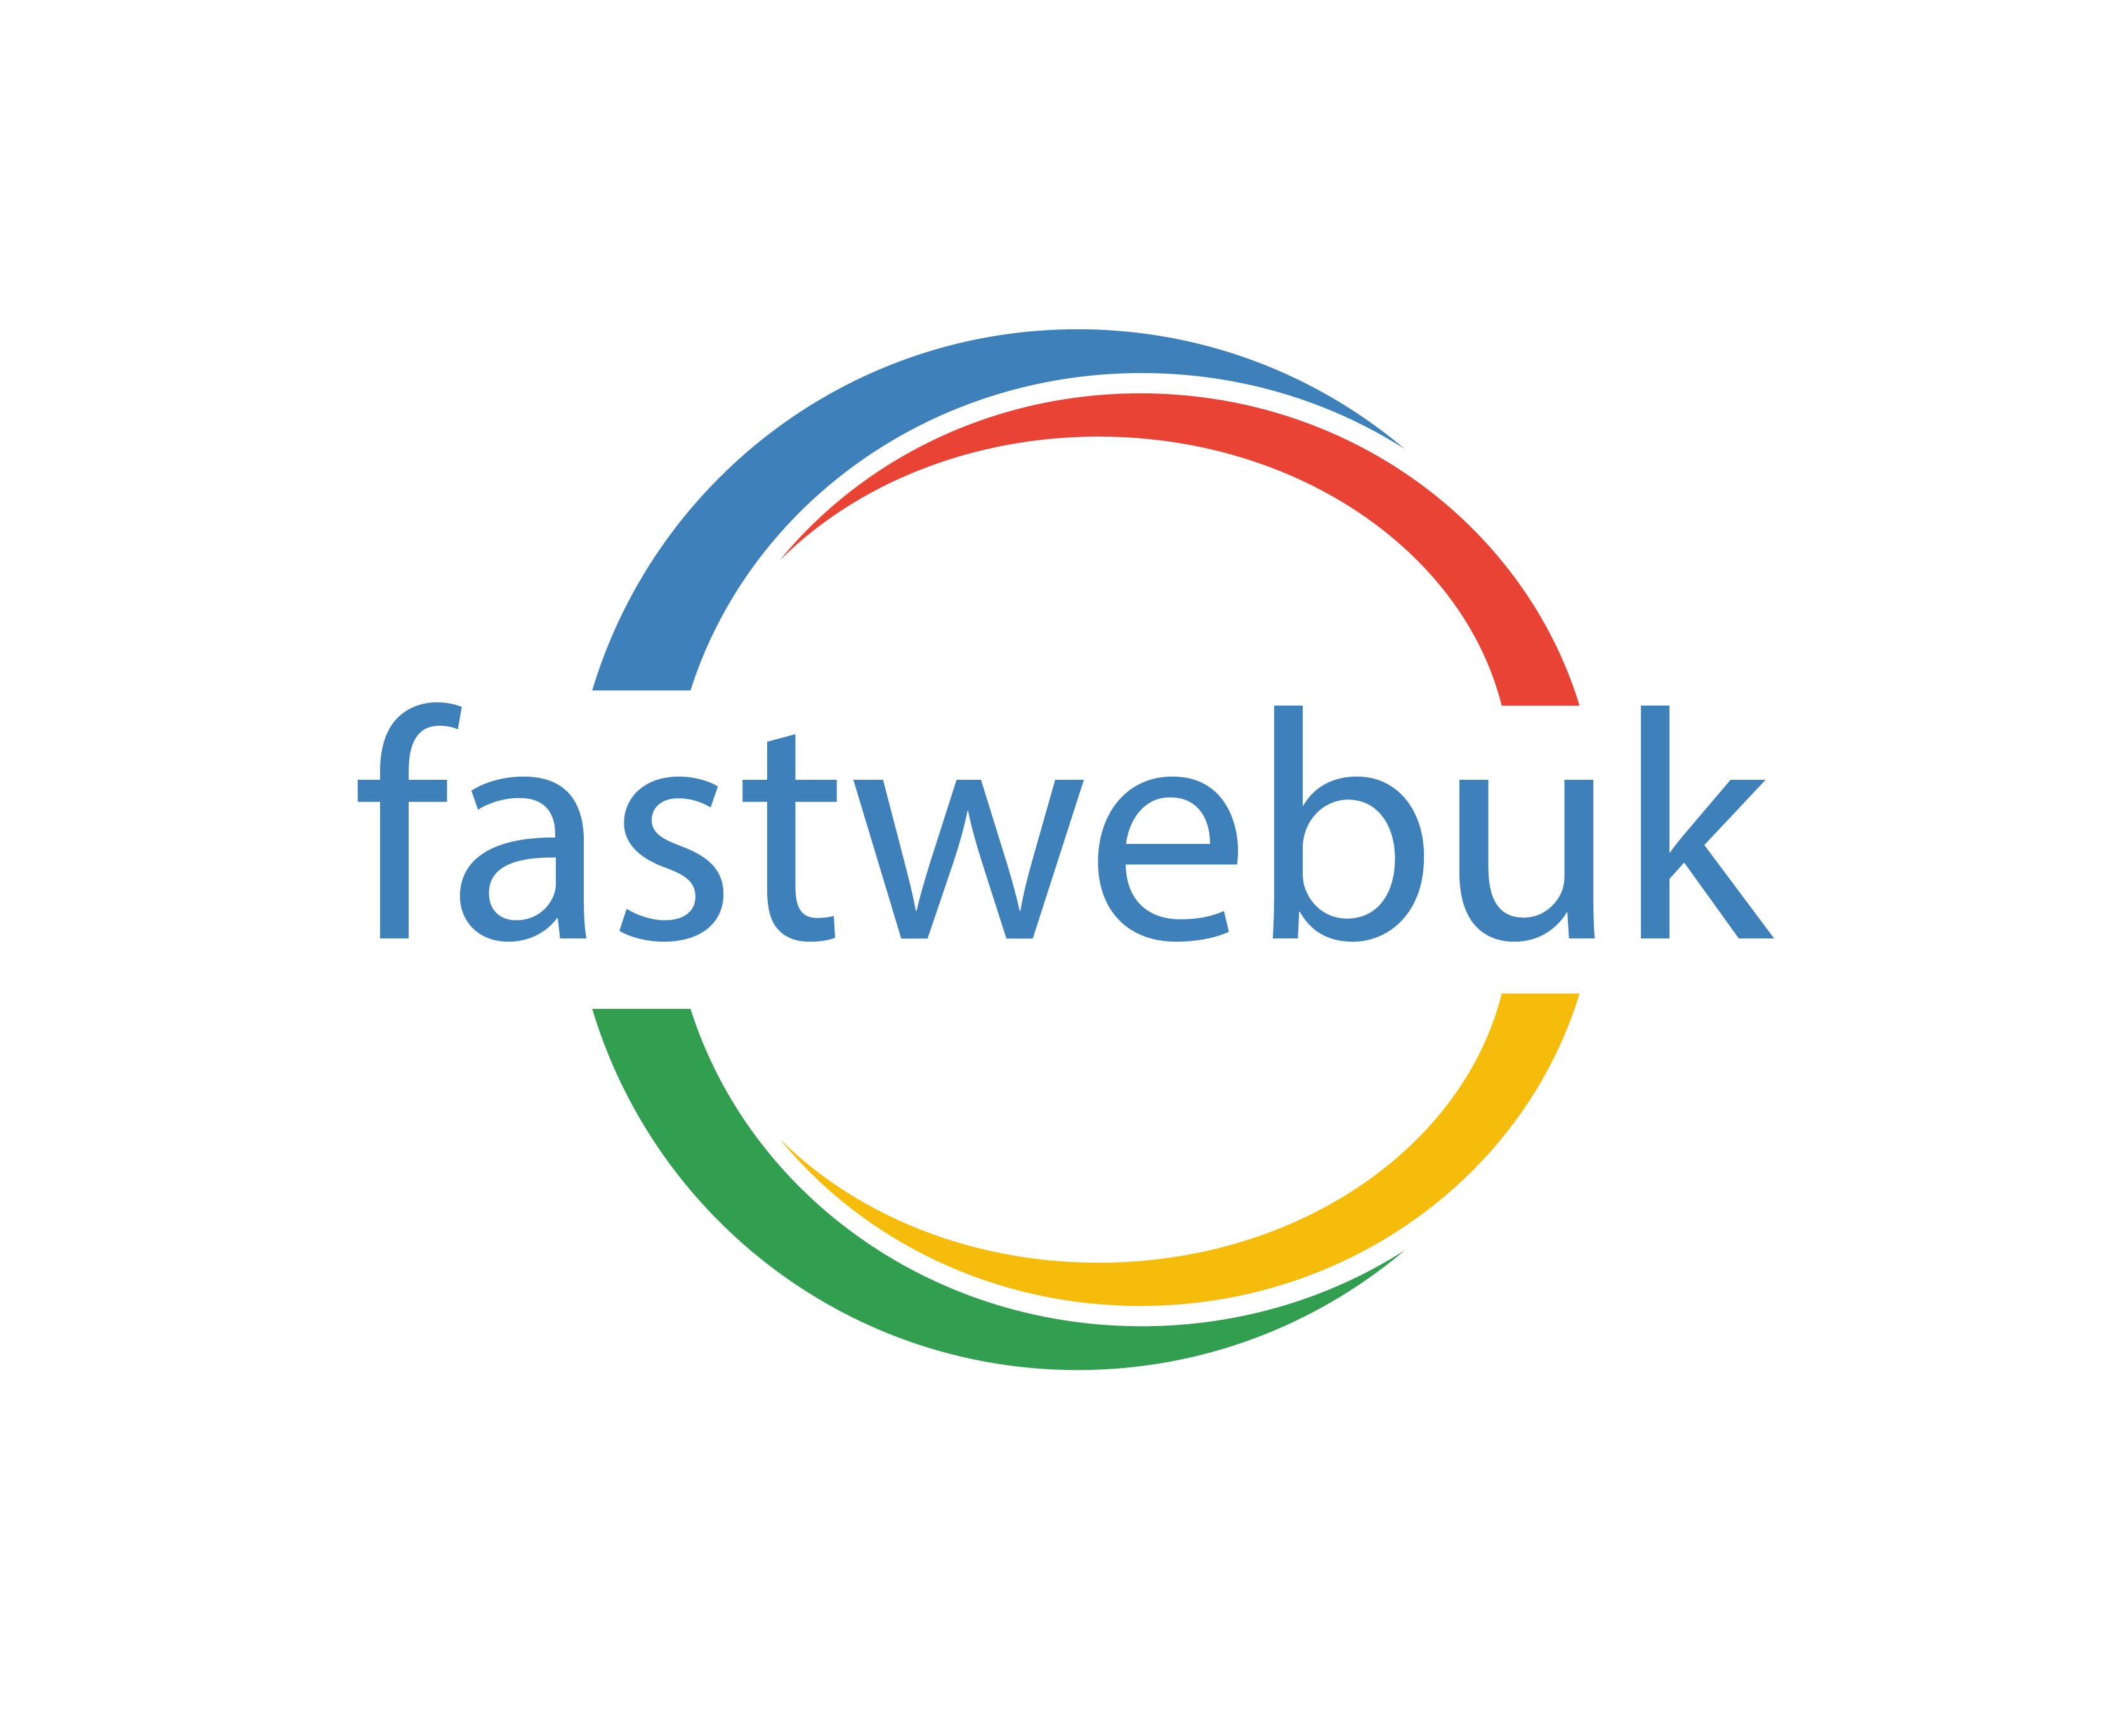 fast web uk